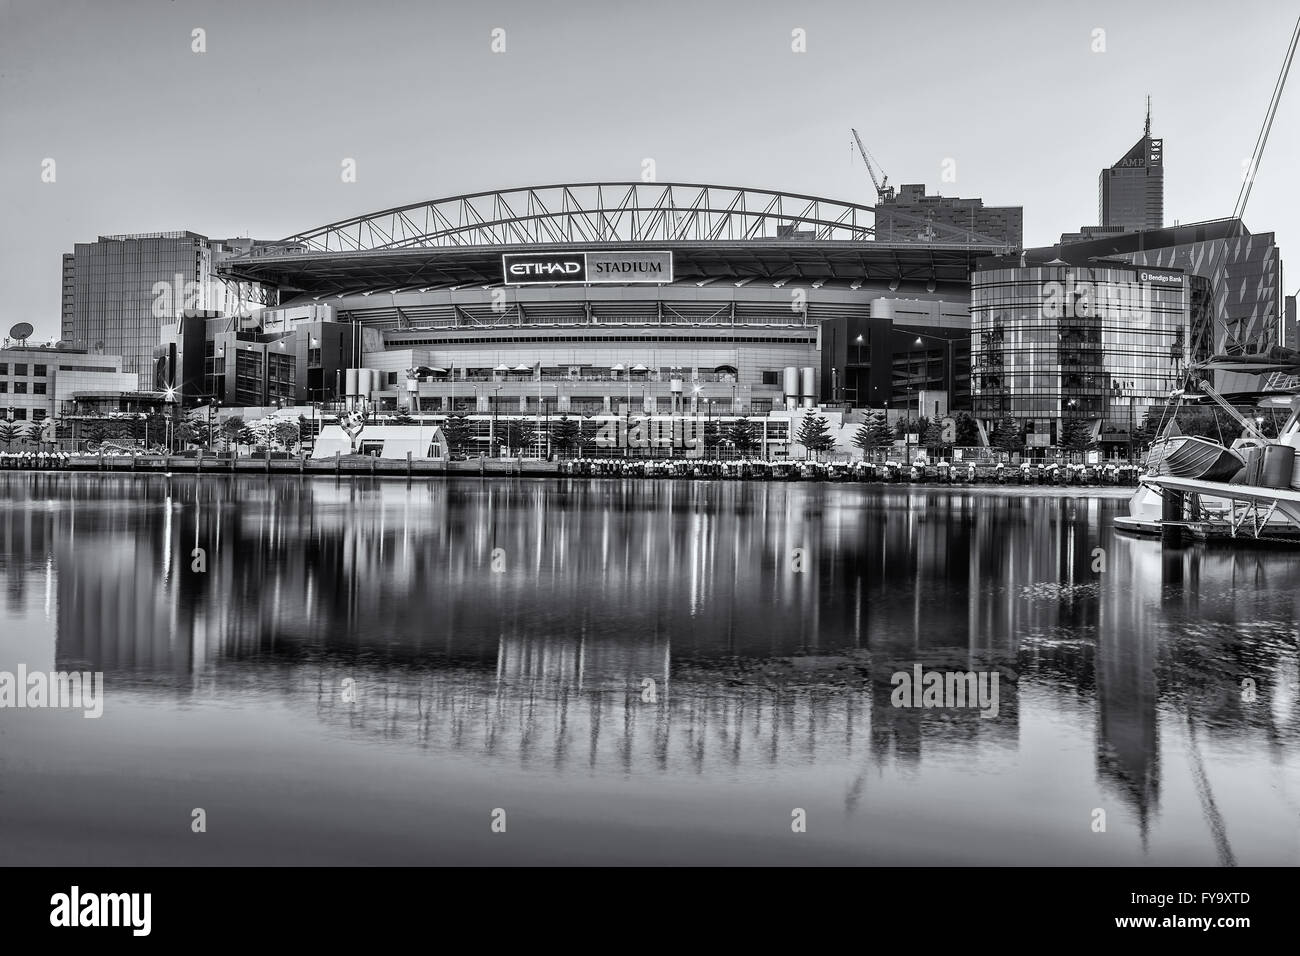 Melbourne, Australia - 21 de febrero de 2016: el estadio Etihad Stadium vistos desde temprano en las mañanas waterfront Docklands light. Blanco y negro imag Foto de stock